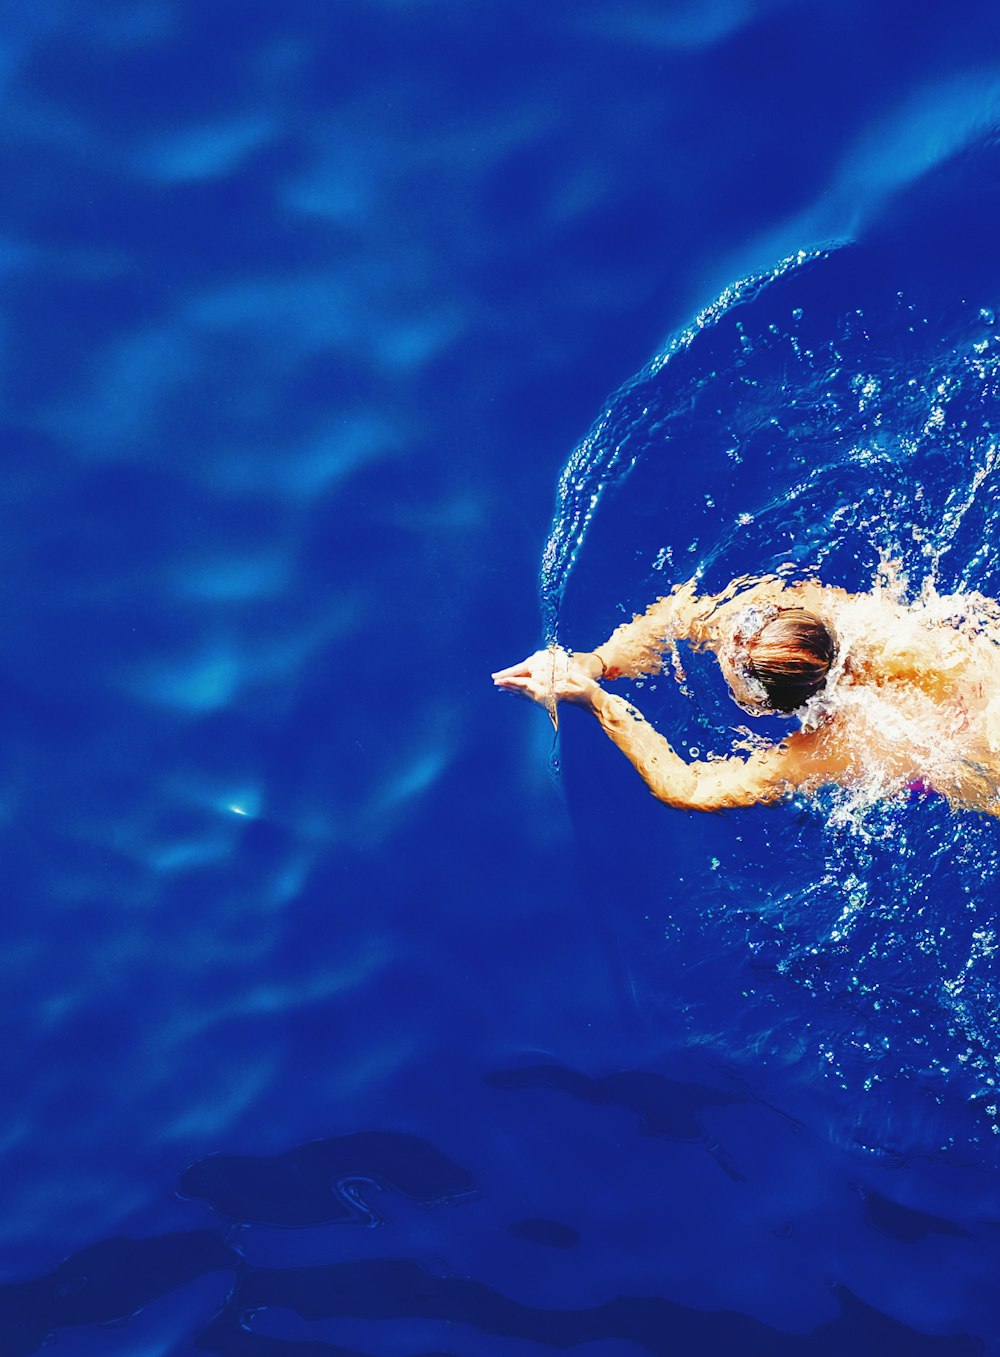 잔잔한 물 위에서 수영하는 여자의 클로즈업 사진